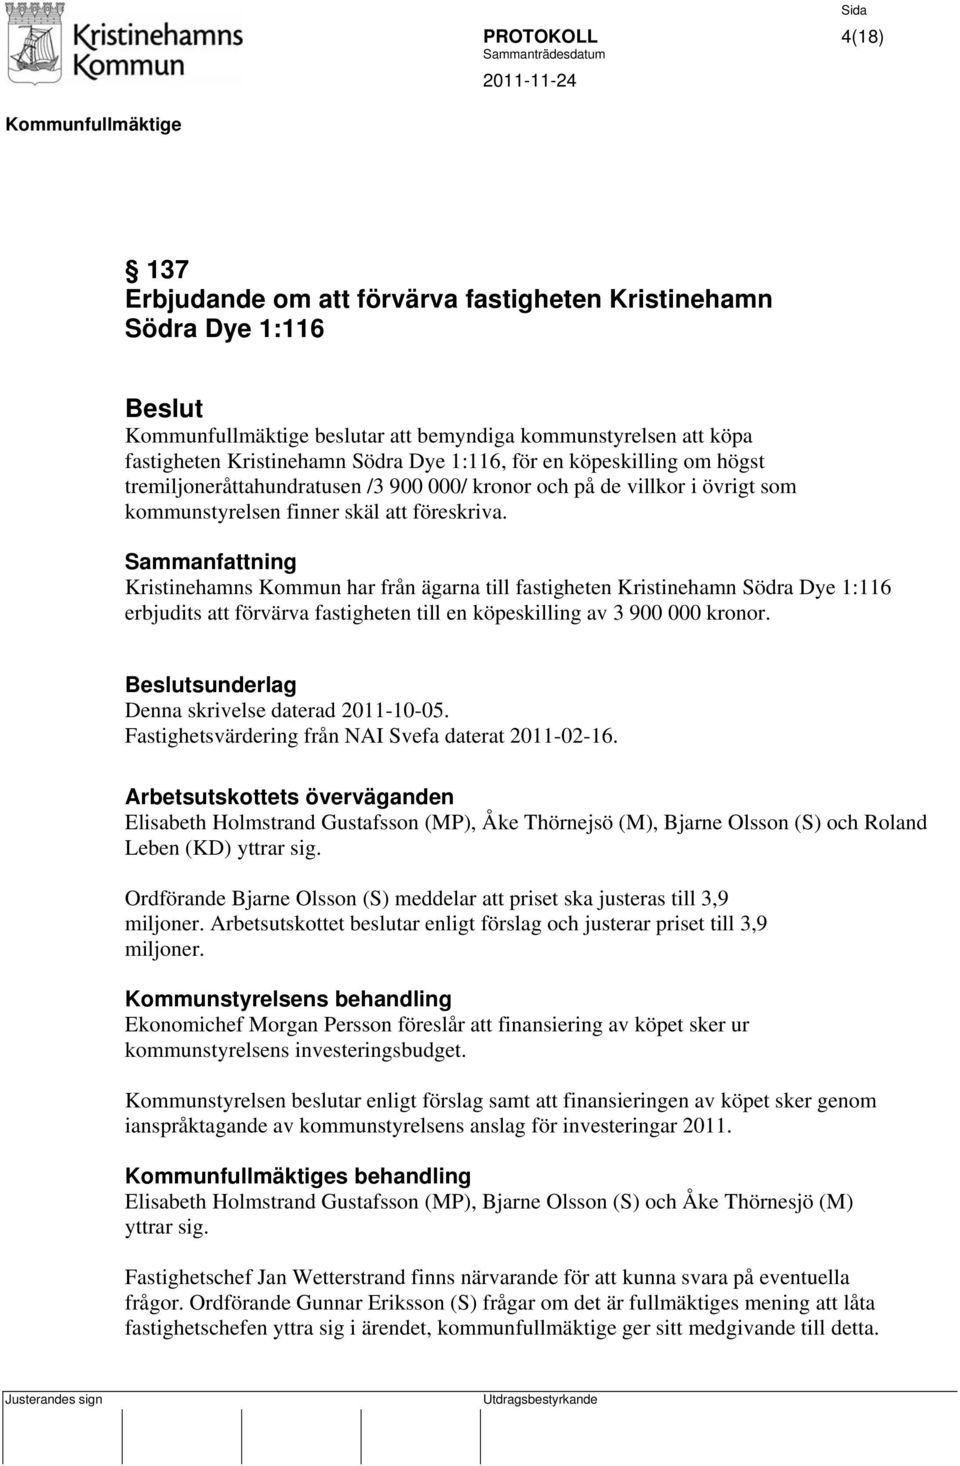 Kristinehamns Kommun har från ägarna till fastigheten Kristinehamn Södra Dye 1:116 erbjudits att förvärva fastigheten till en köpeskilling av 3 900 000 kronor.